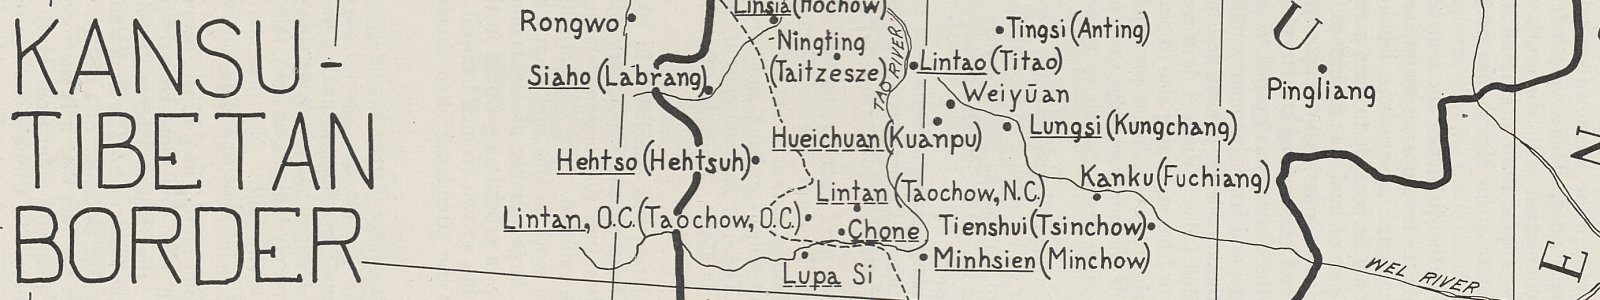 ‘Kansu-Tibetan border’. In: 'Missionary Atlas', 1950